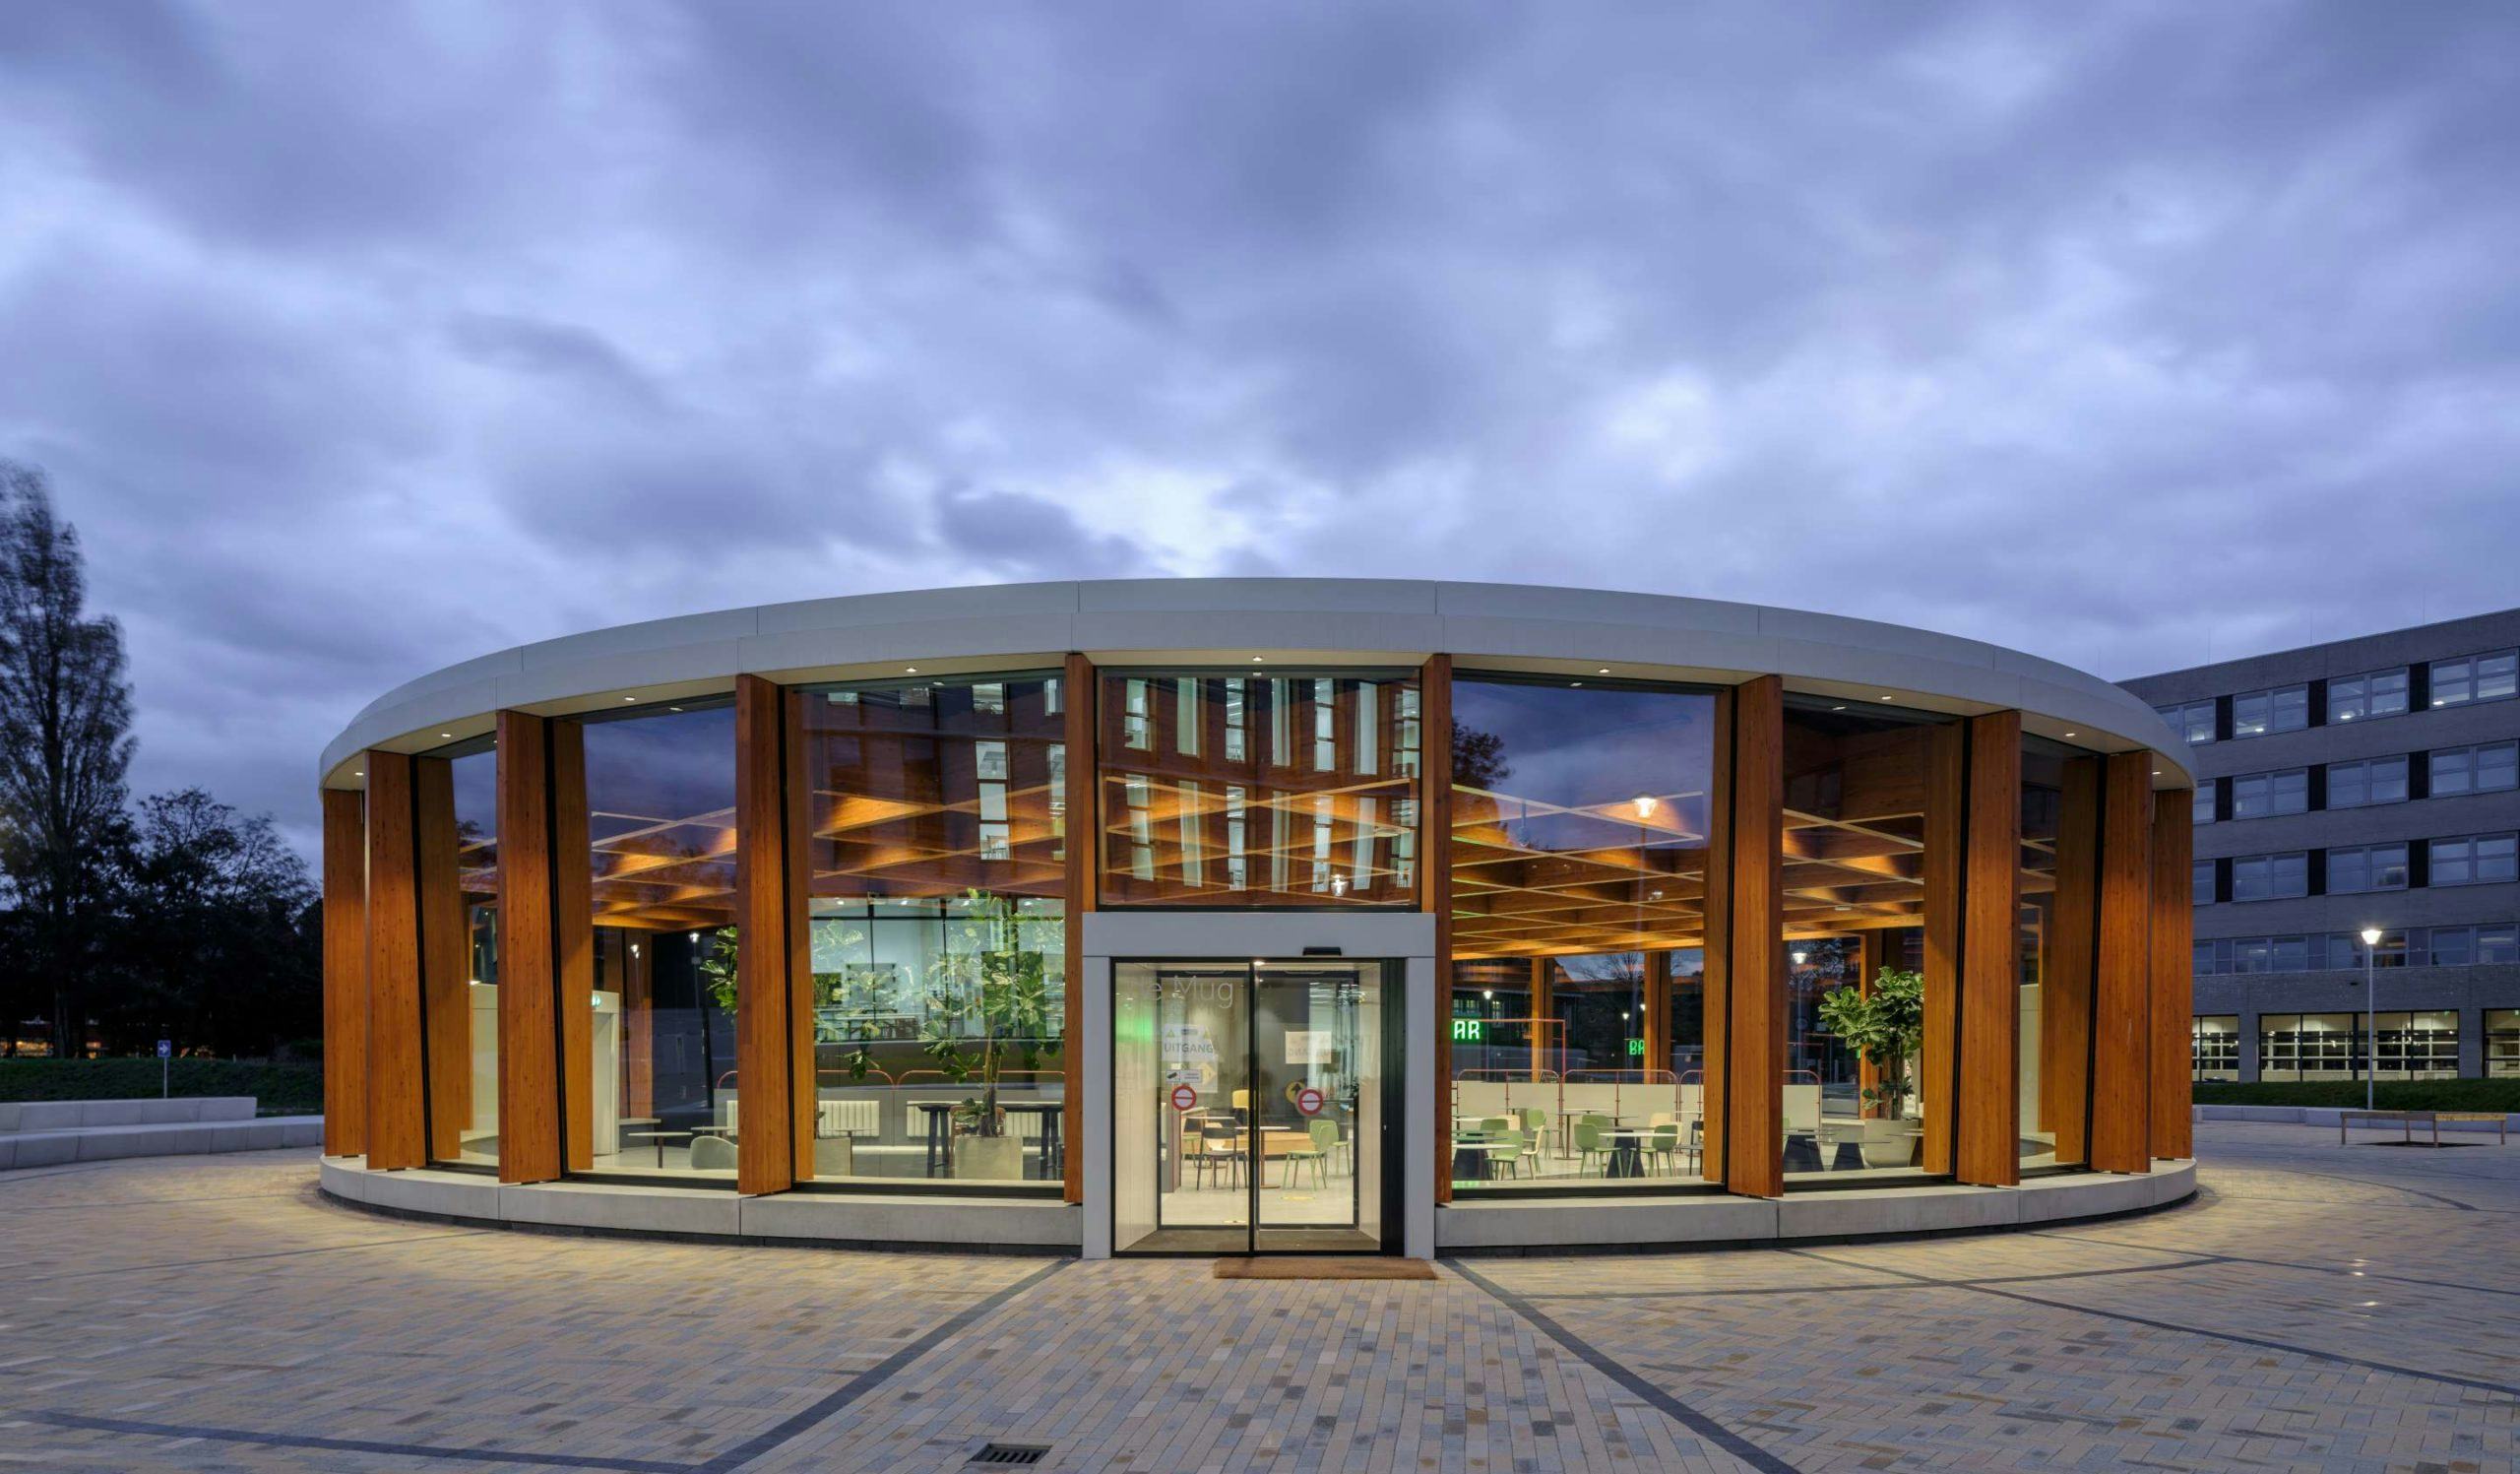 Multifunctioneel paviljoen De Mug, Nova Campus in Haarlem door Paul de Ruiter Architects. Beeld Ossip van Duivenbode